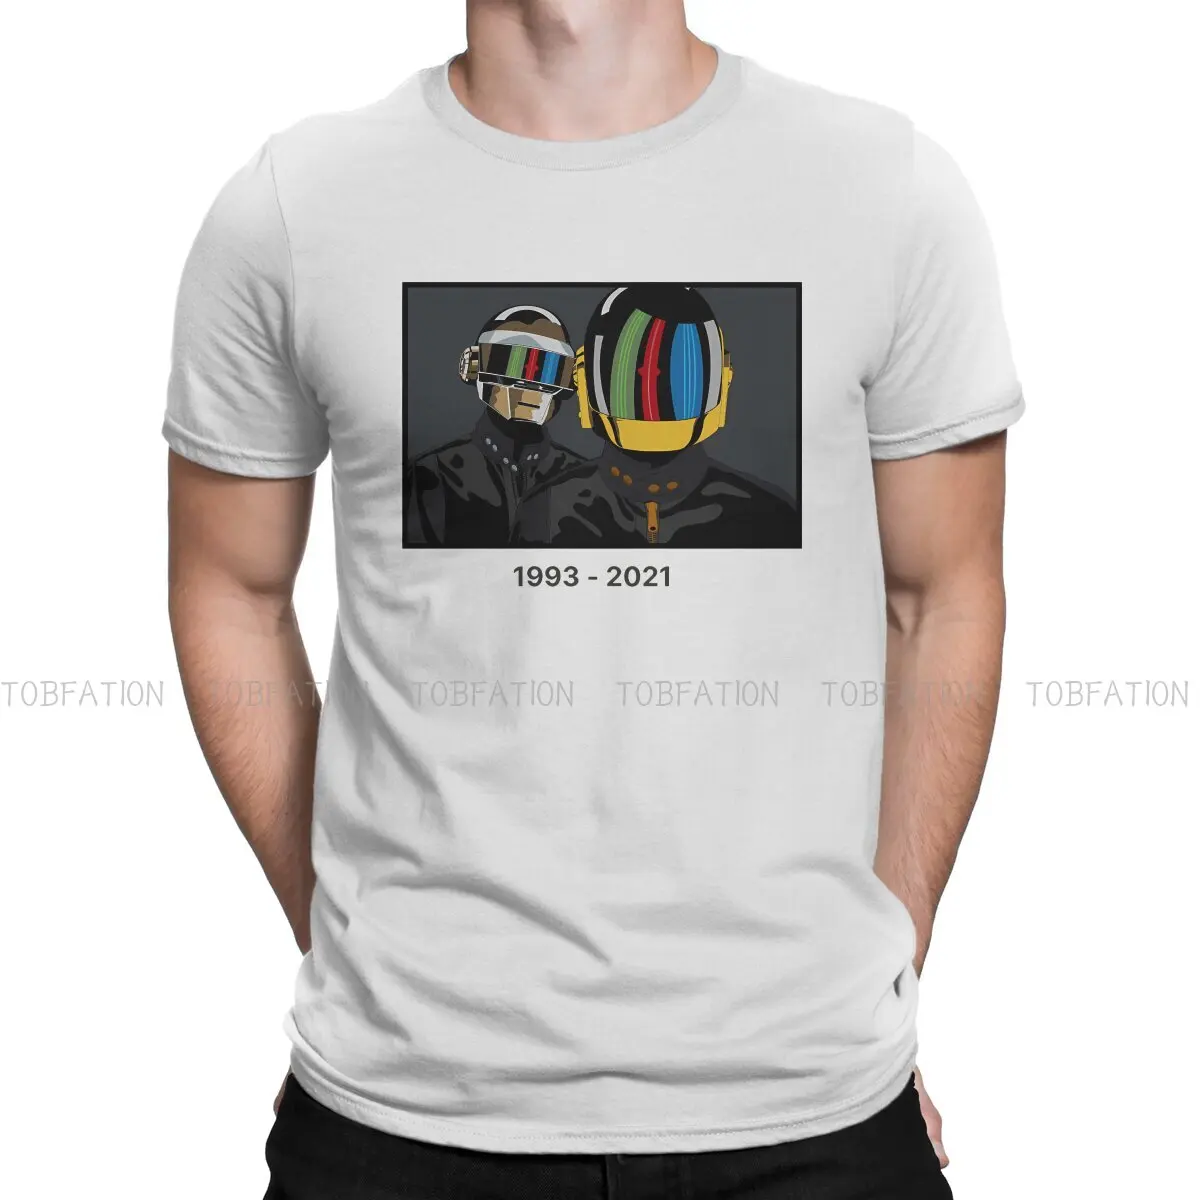 

Базовая футболка Epilogue футболка с круглым воротником Daft в стиле панк из чистого хлопка, мужские топы, новый дизайн, большие размеры